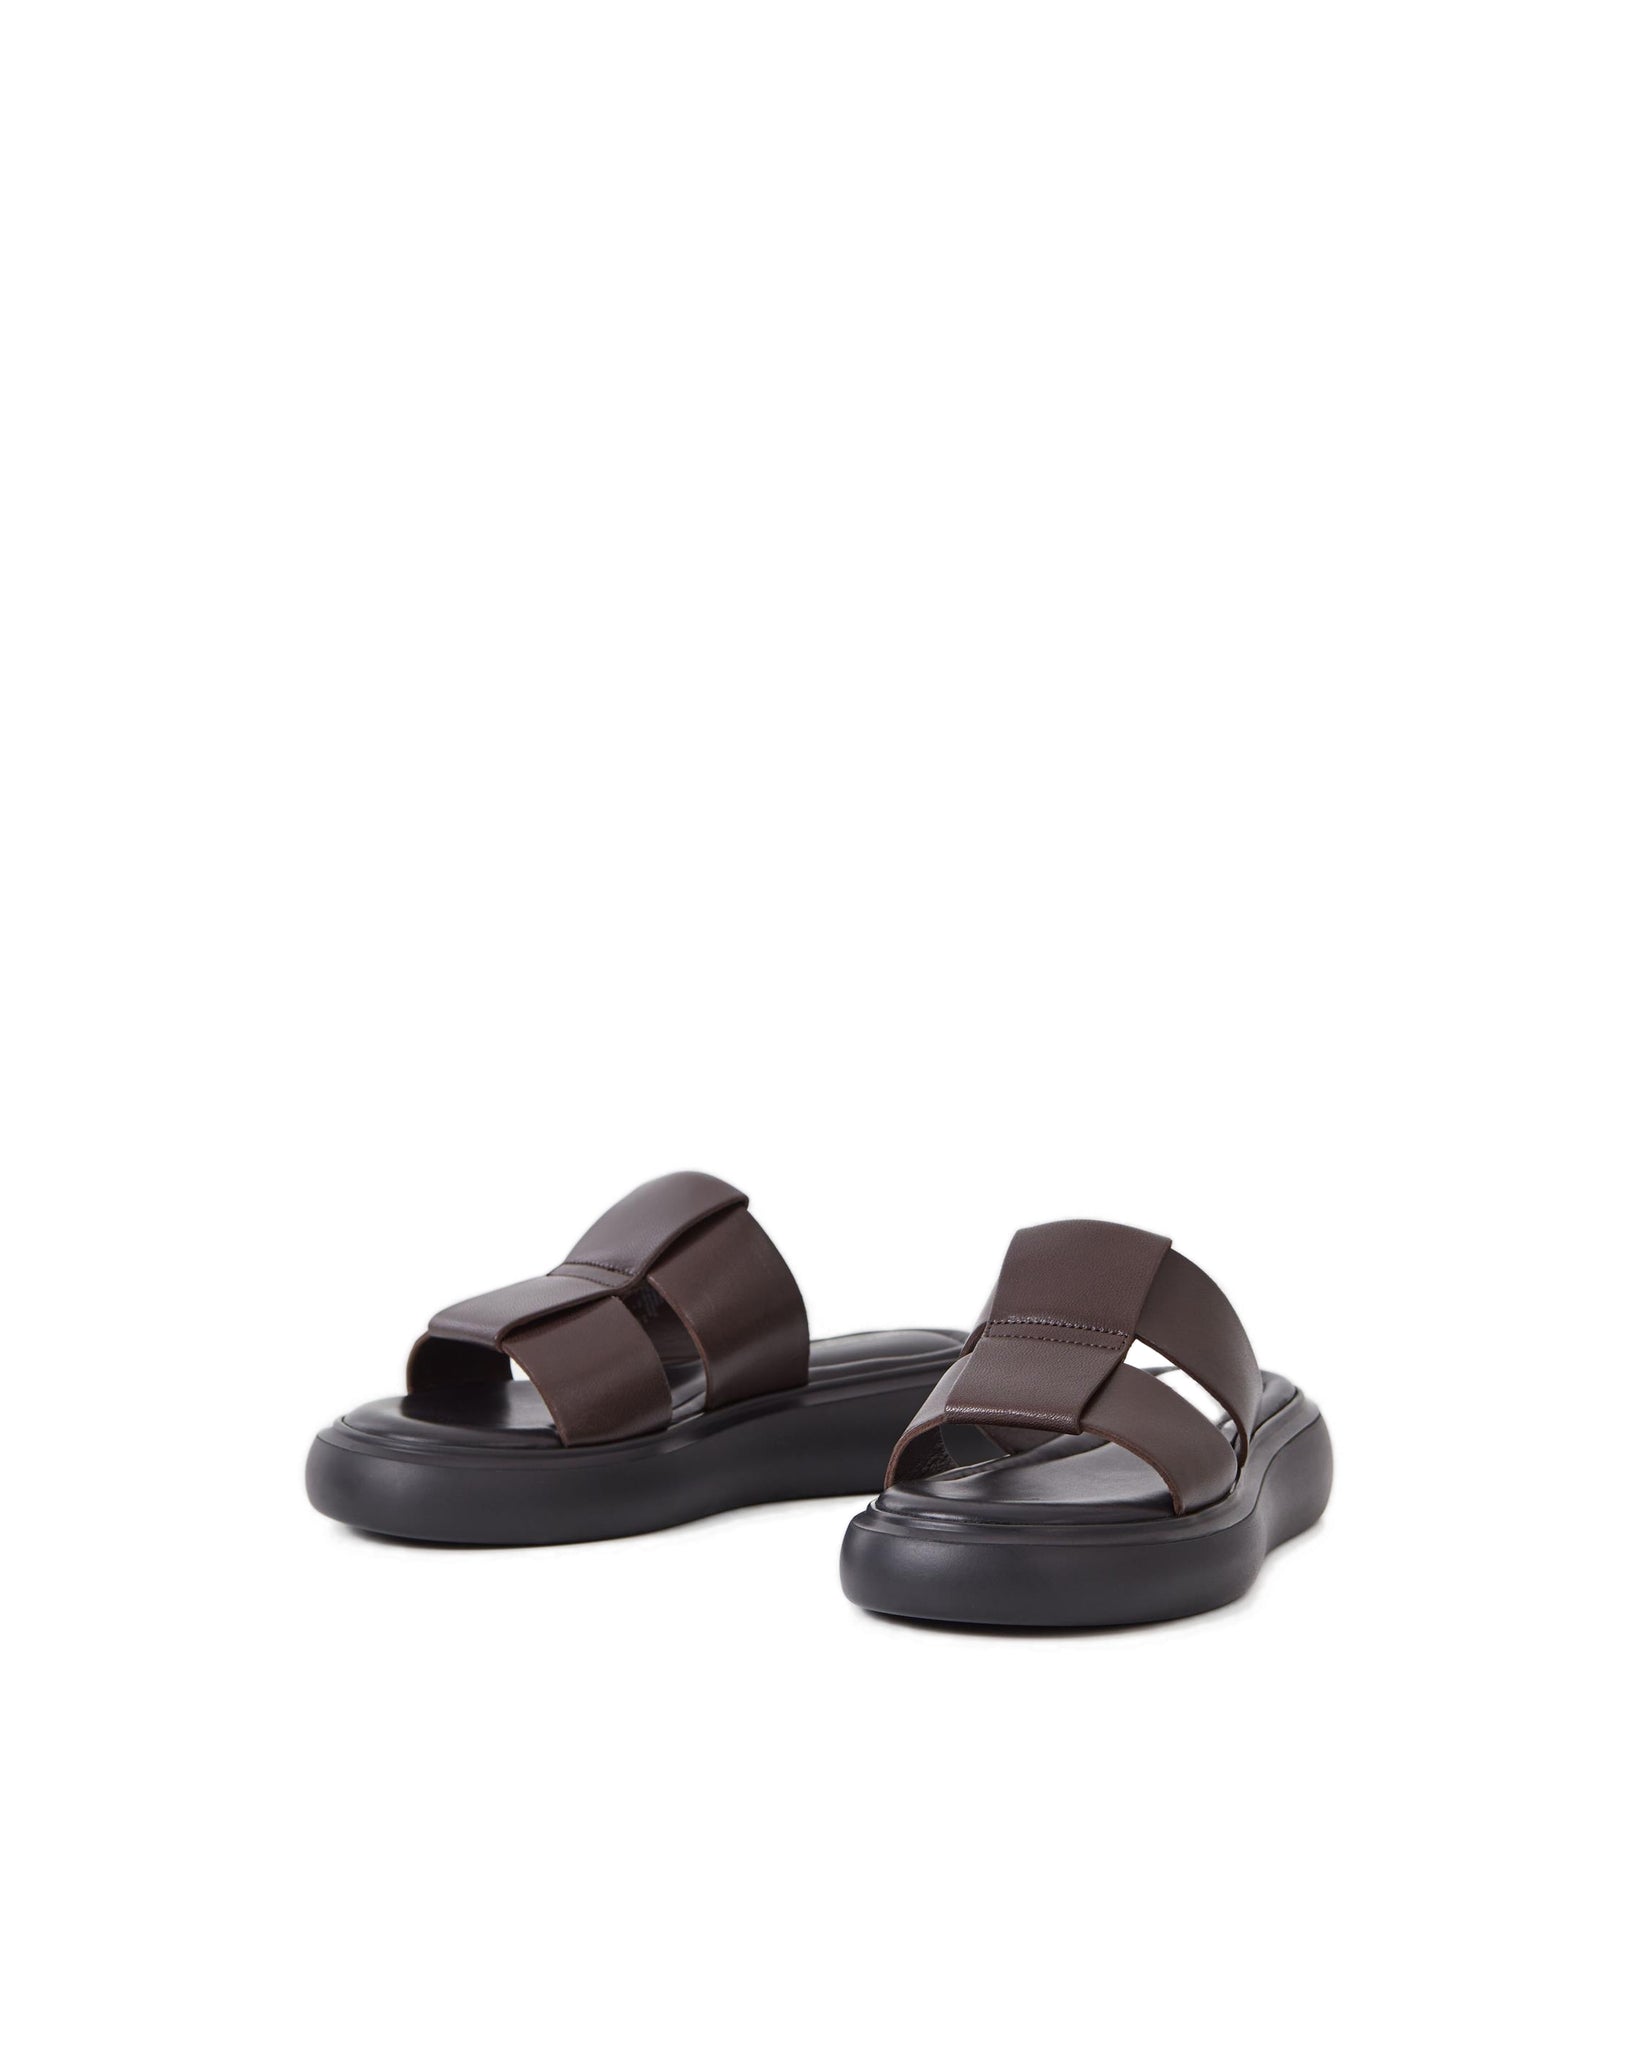 Blenda (5519-201-35) Sandals - Dark Brown Leather